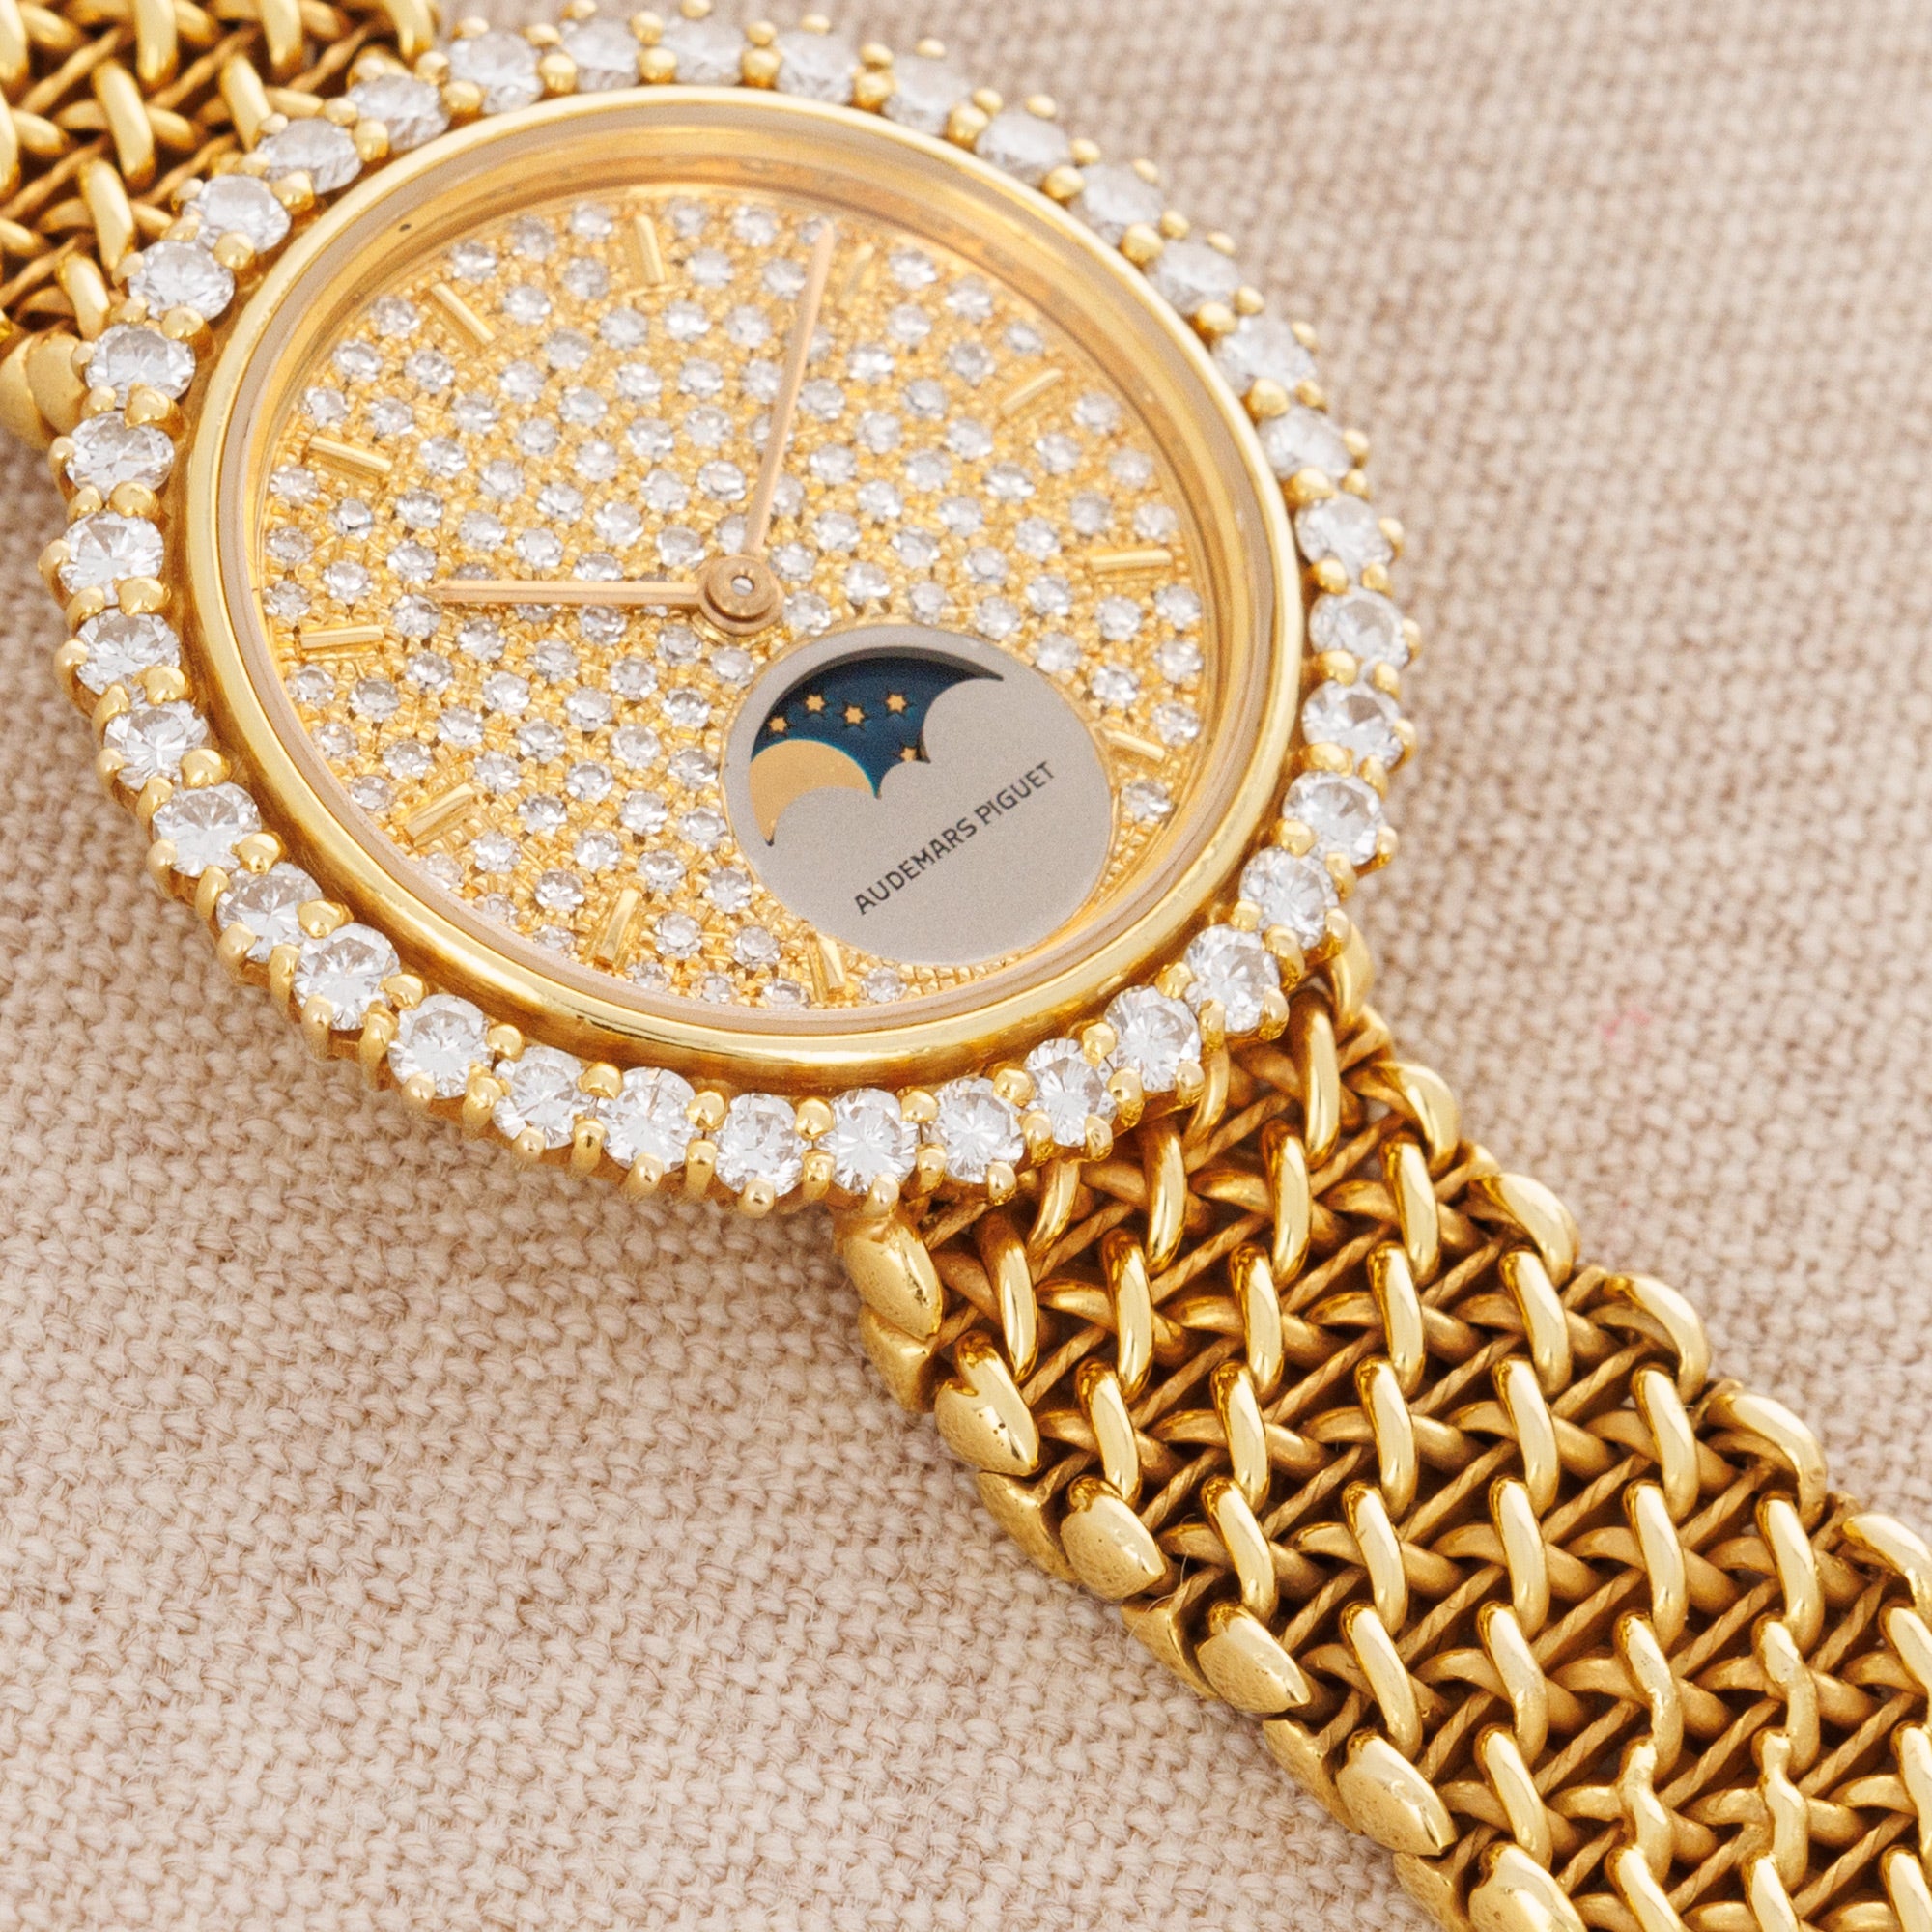 Audemars Piguet - Audemars Piguet Yellow Gold Diamond Moonphase Watch - The Keystone Watches